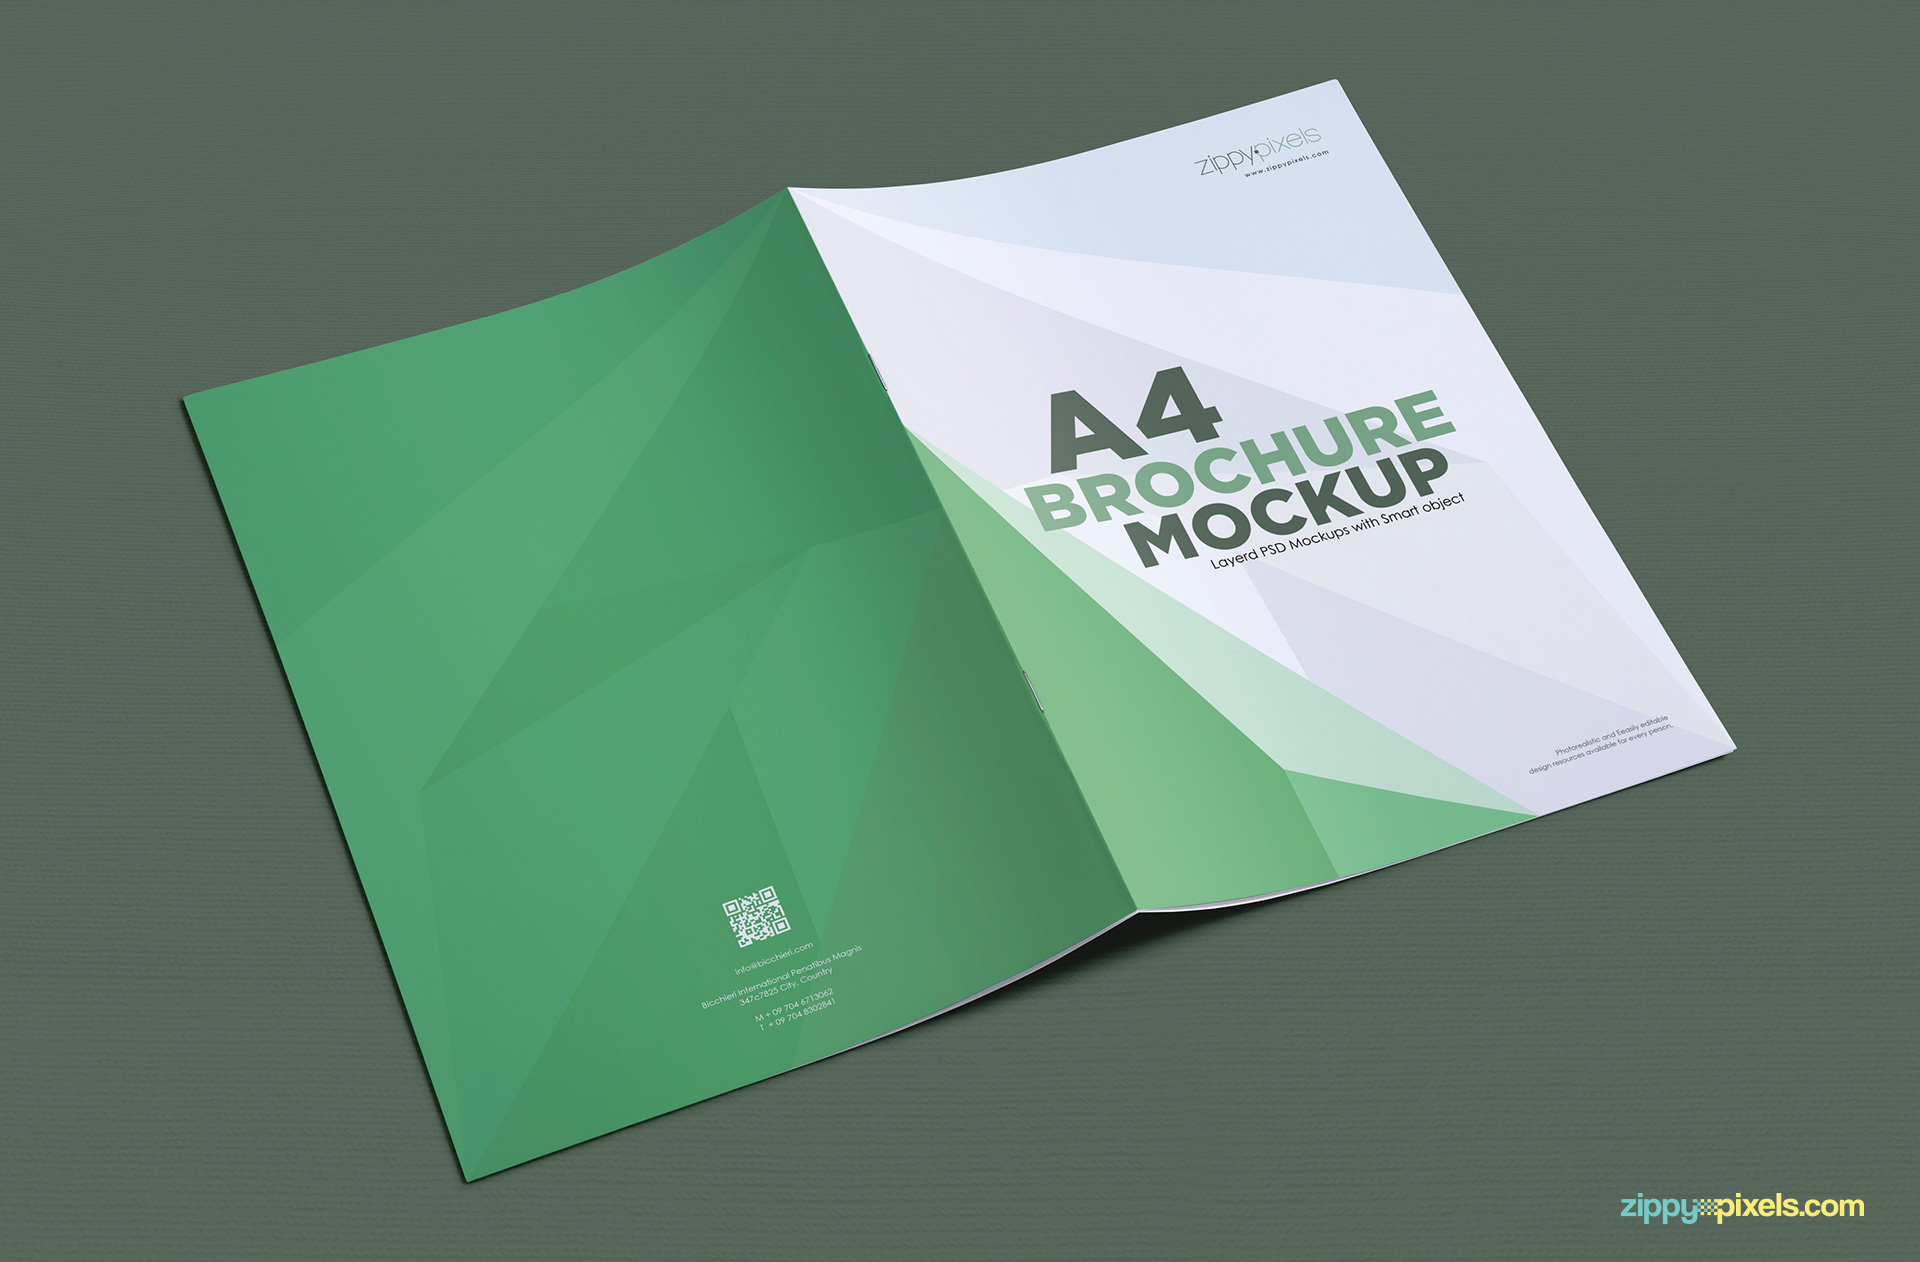 Download Free A4 Brochure Mockup | ZippyPixels PSD Mockup Templates